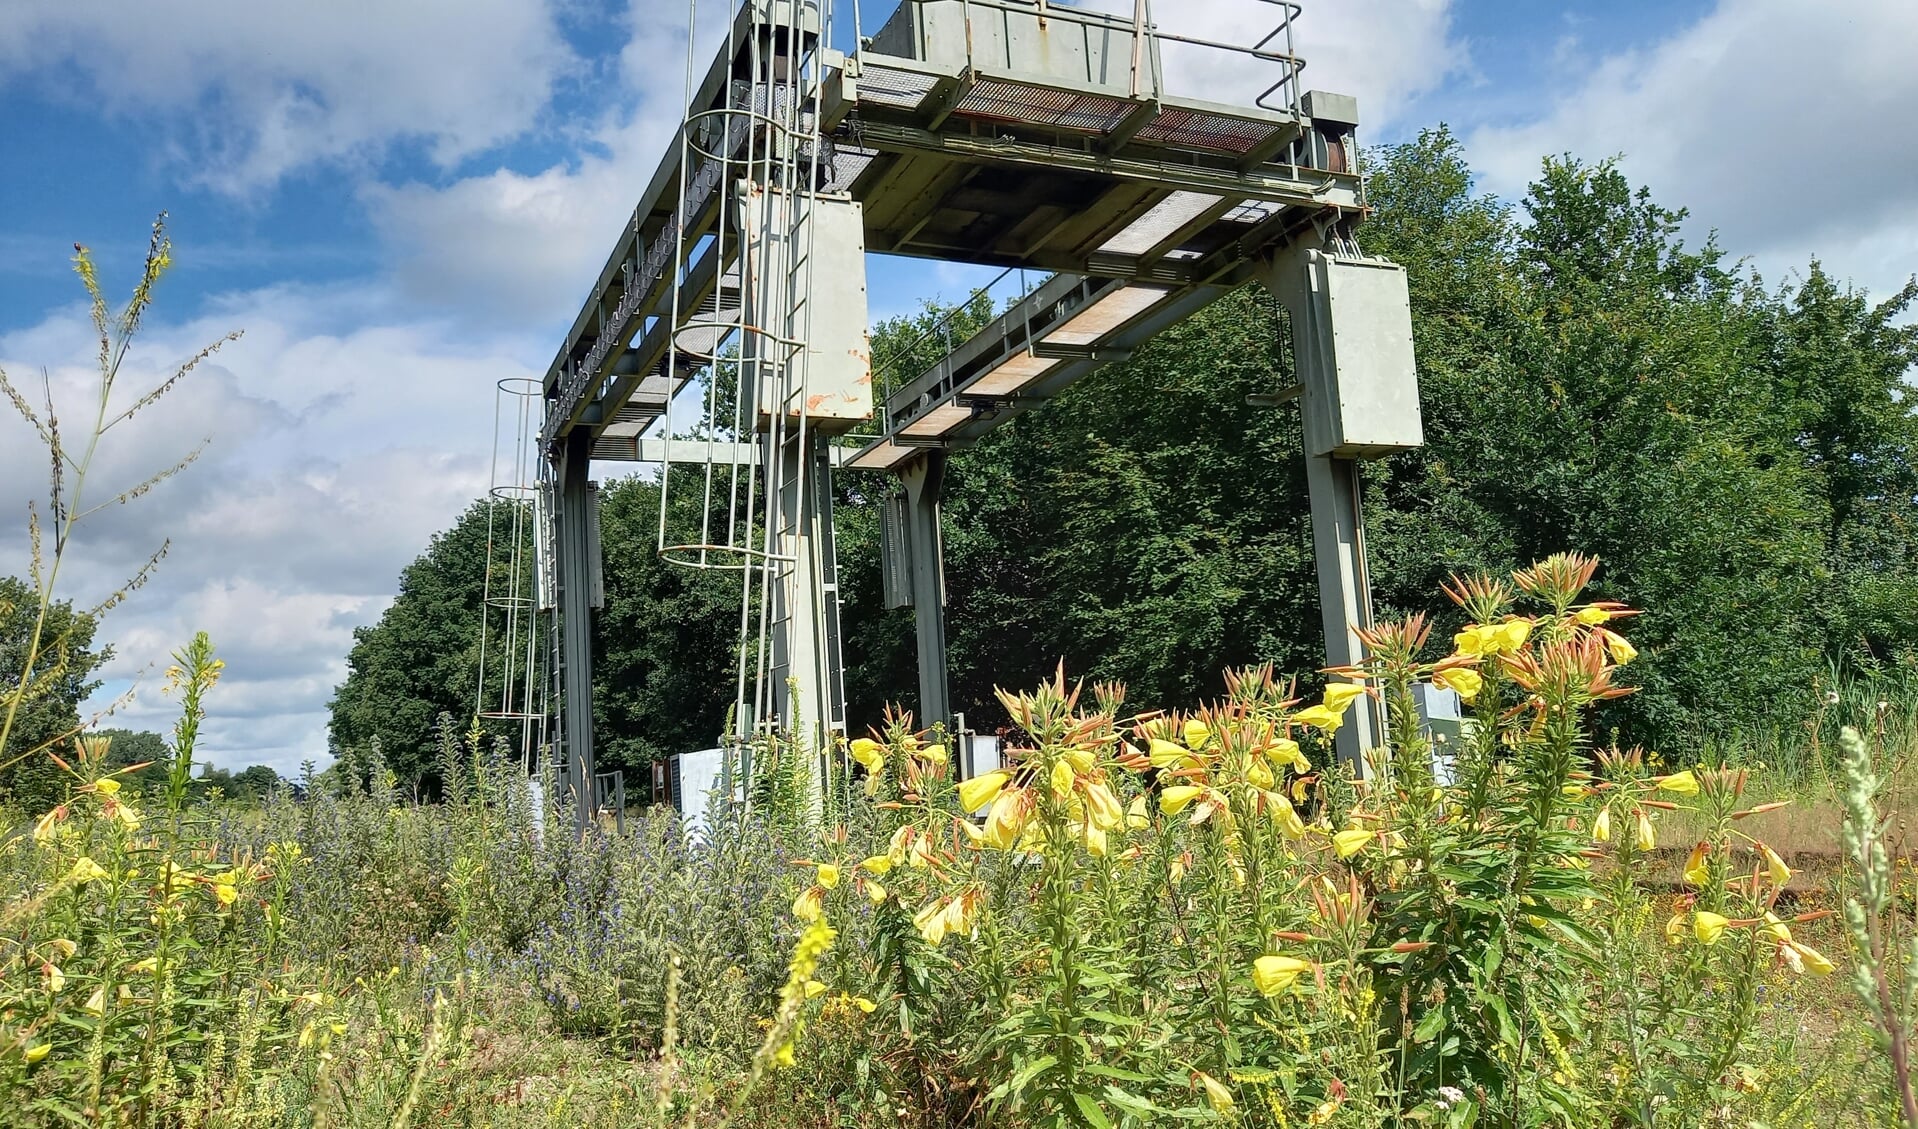 De laatste spoorbrug is inmiddels teruggeplaatst aan het spoor in Veghel.